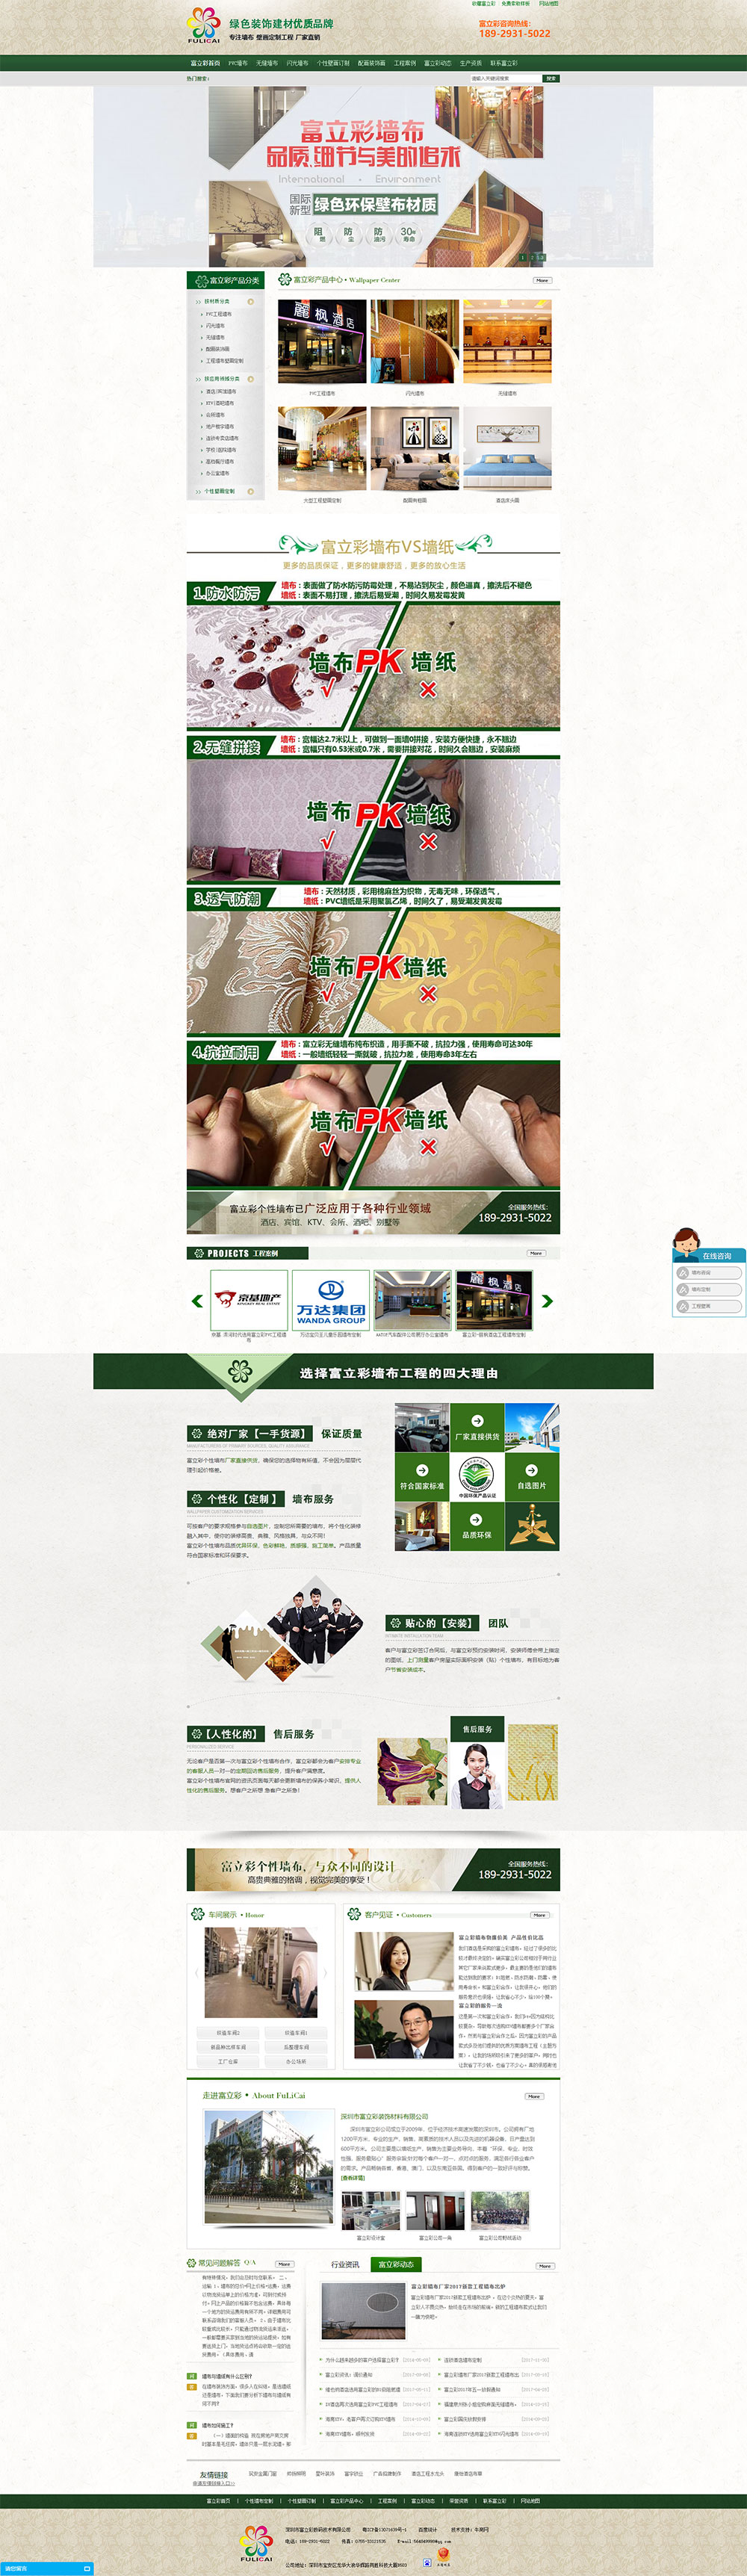 PVC工程墙布|无缝墙布营销型网站(图1)